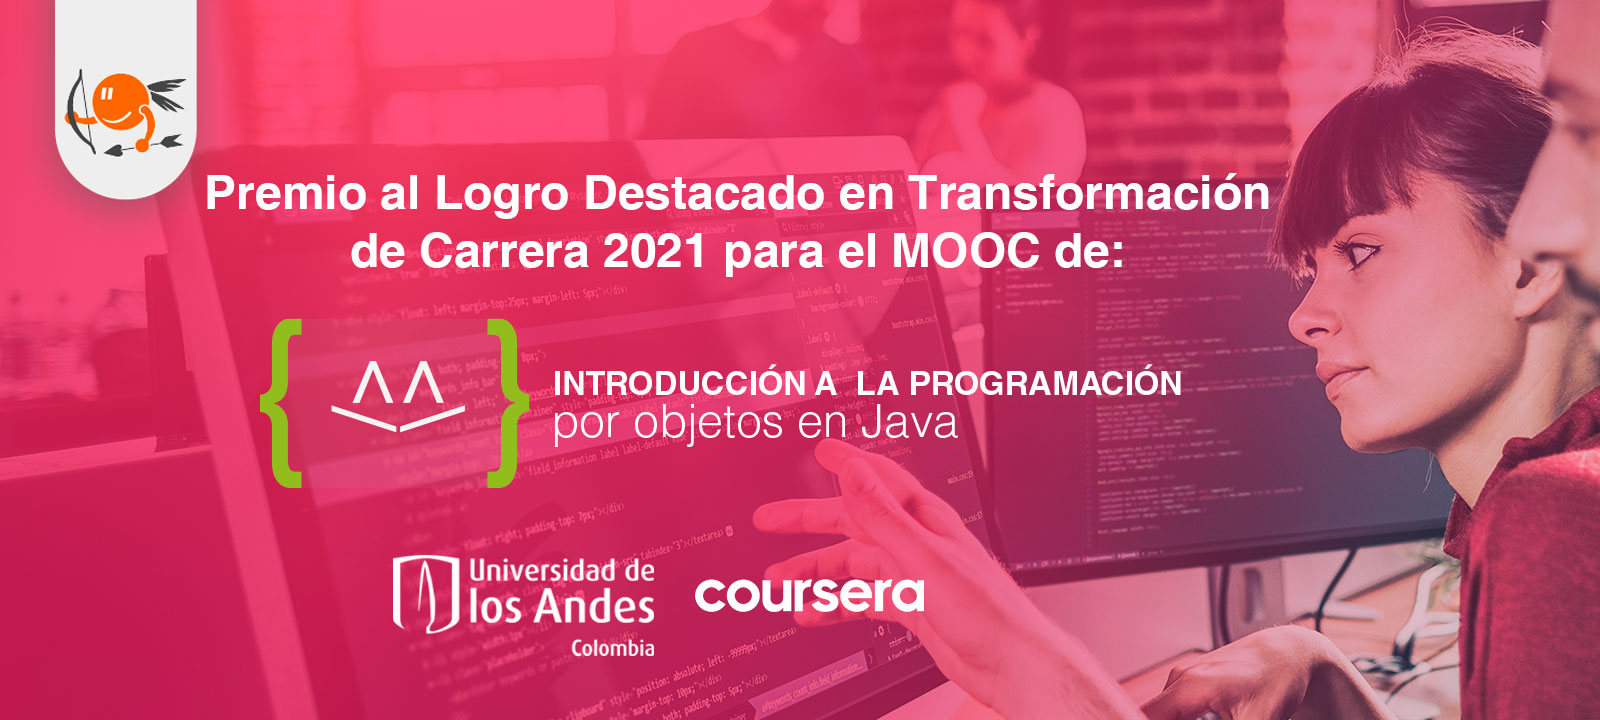 Coursera otorga premio de ‘Transformación de Carrera’ al MOOC de Java